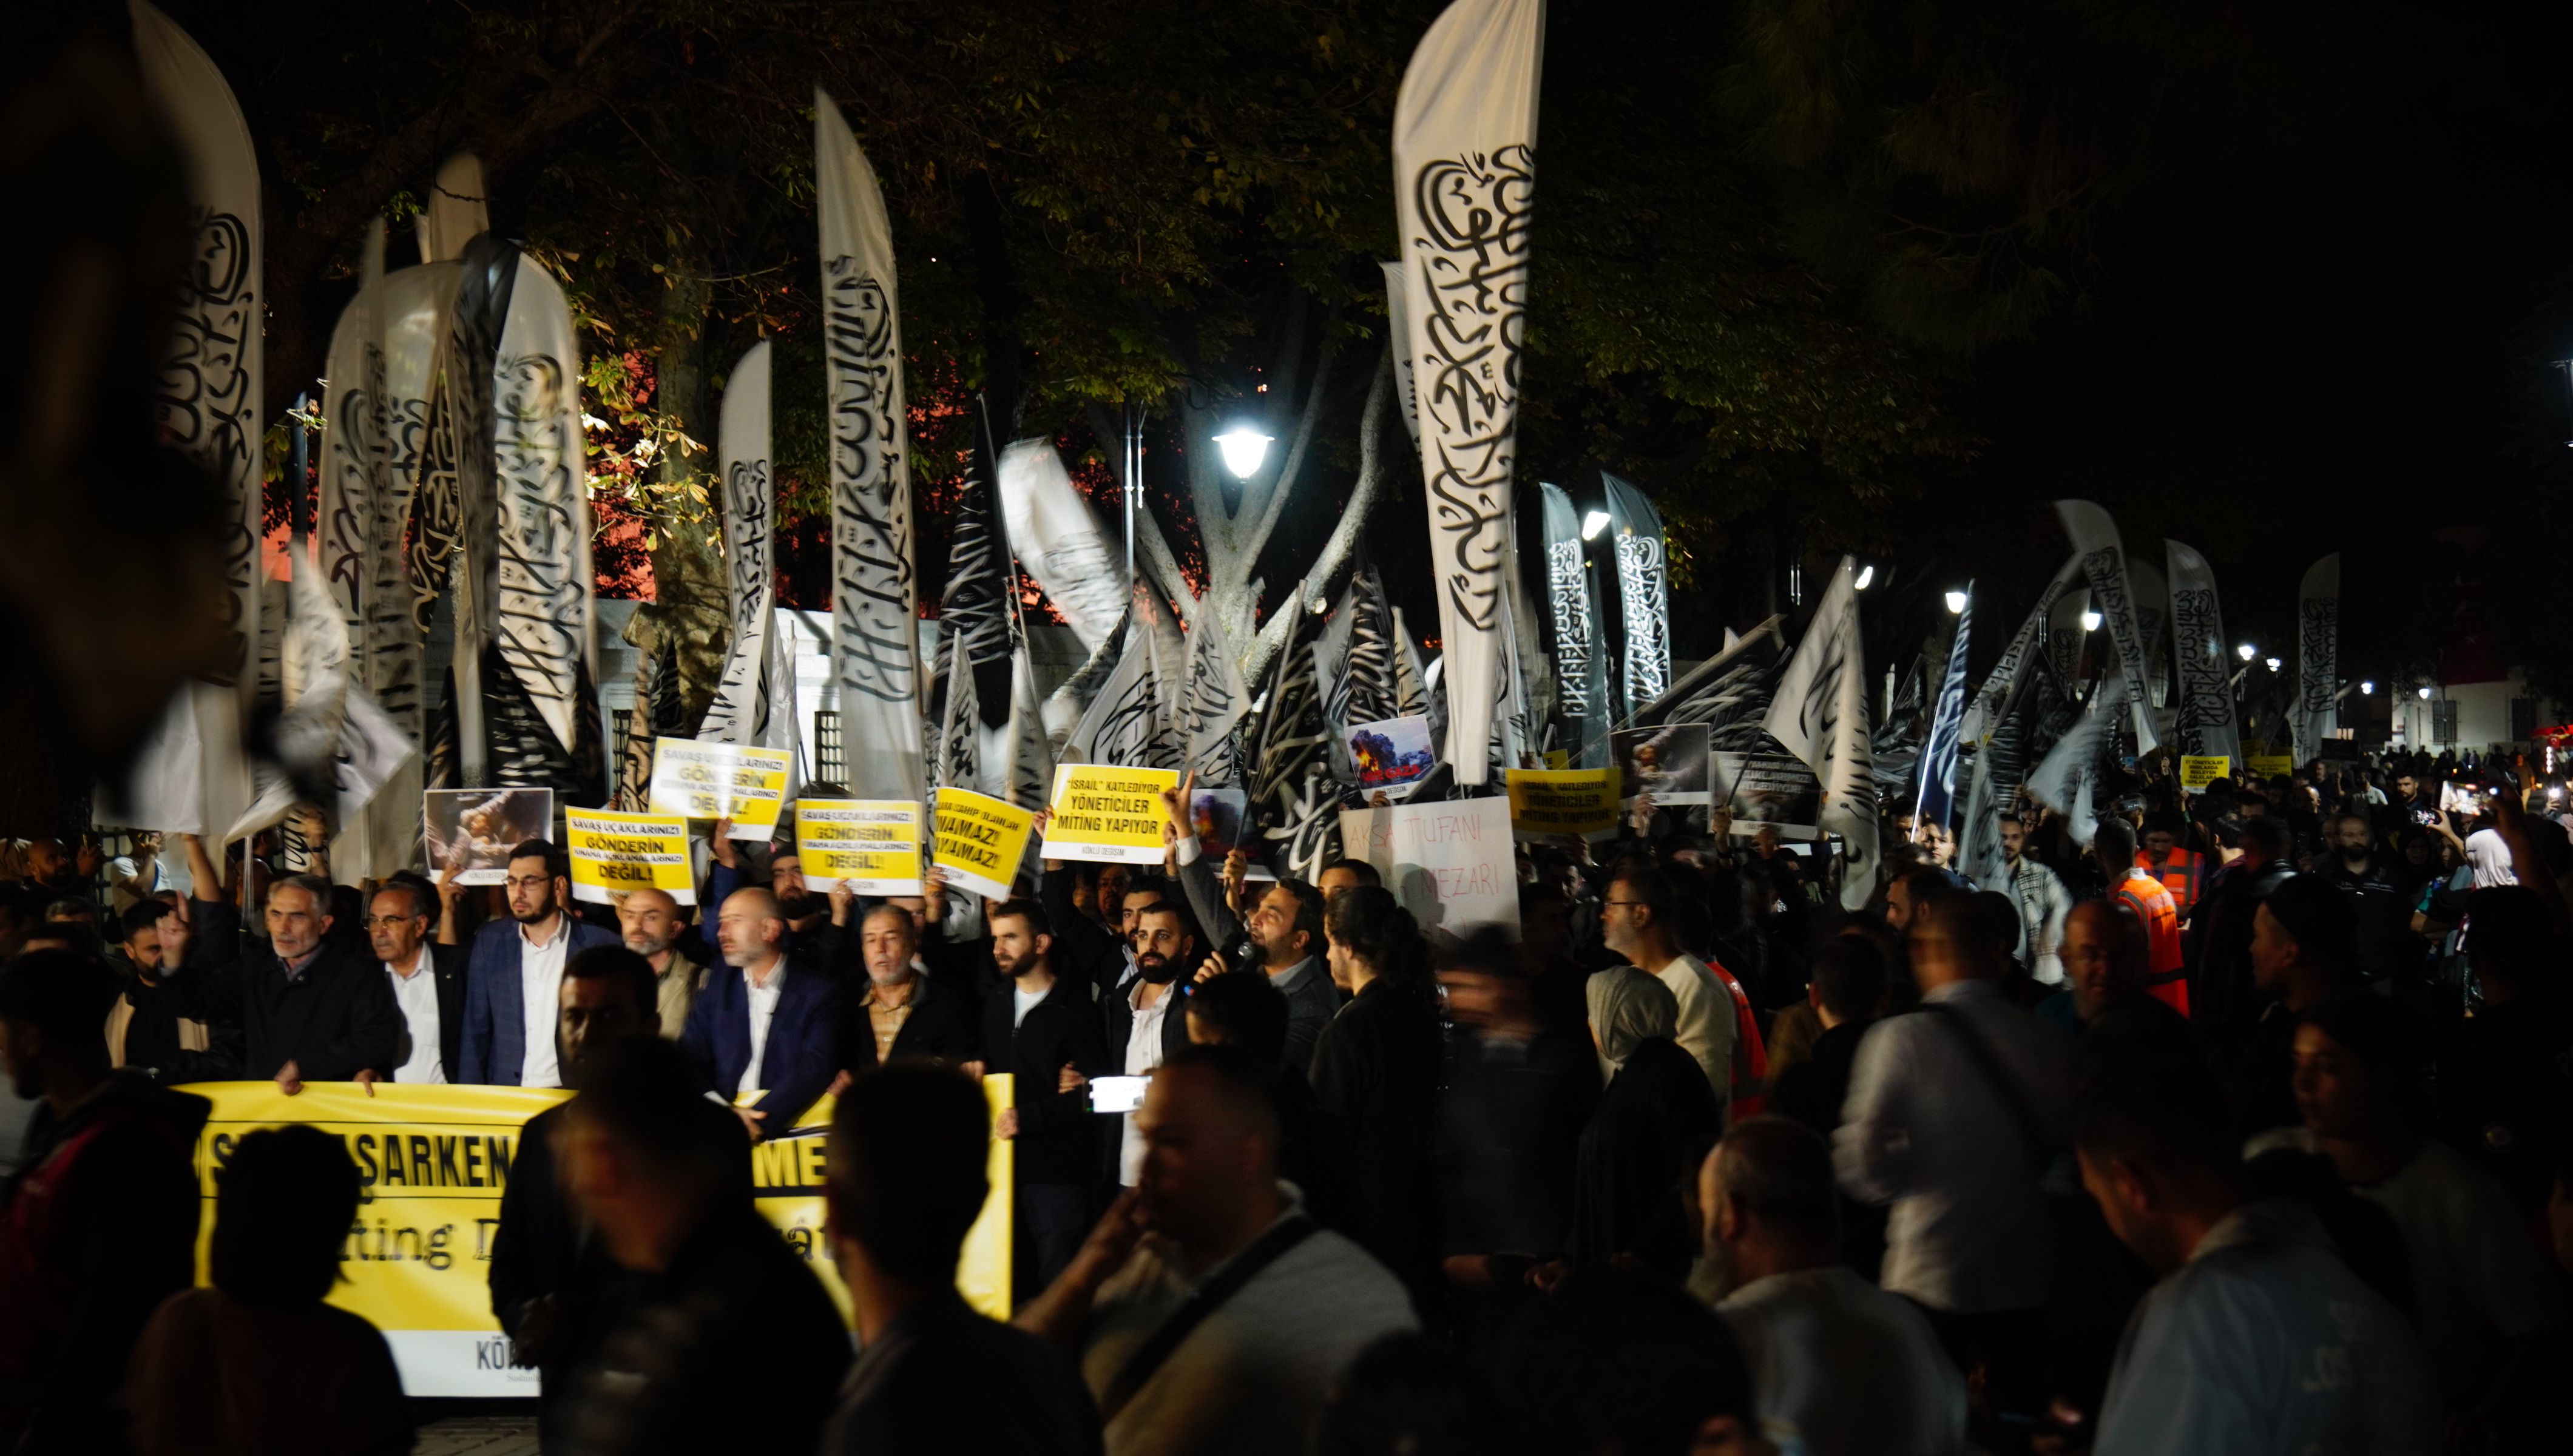 hizbut tahrir türkiye sultanahmet ayasofya miting değil harekat yürüyüş.JPG